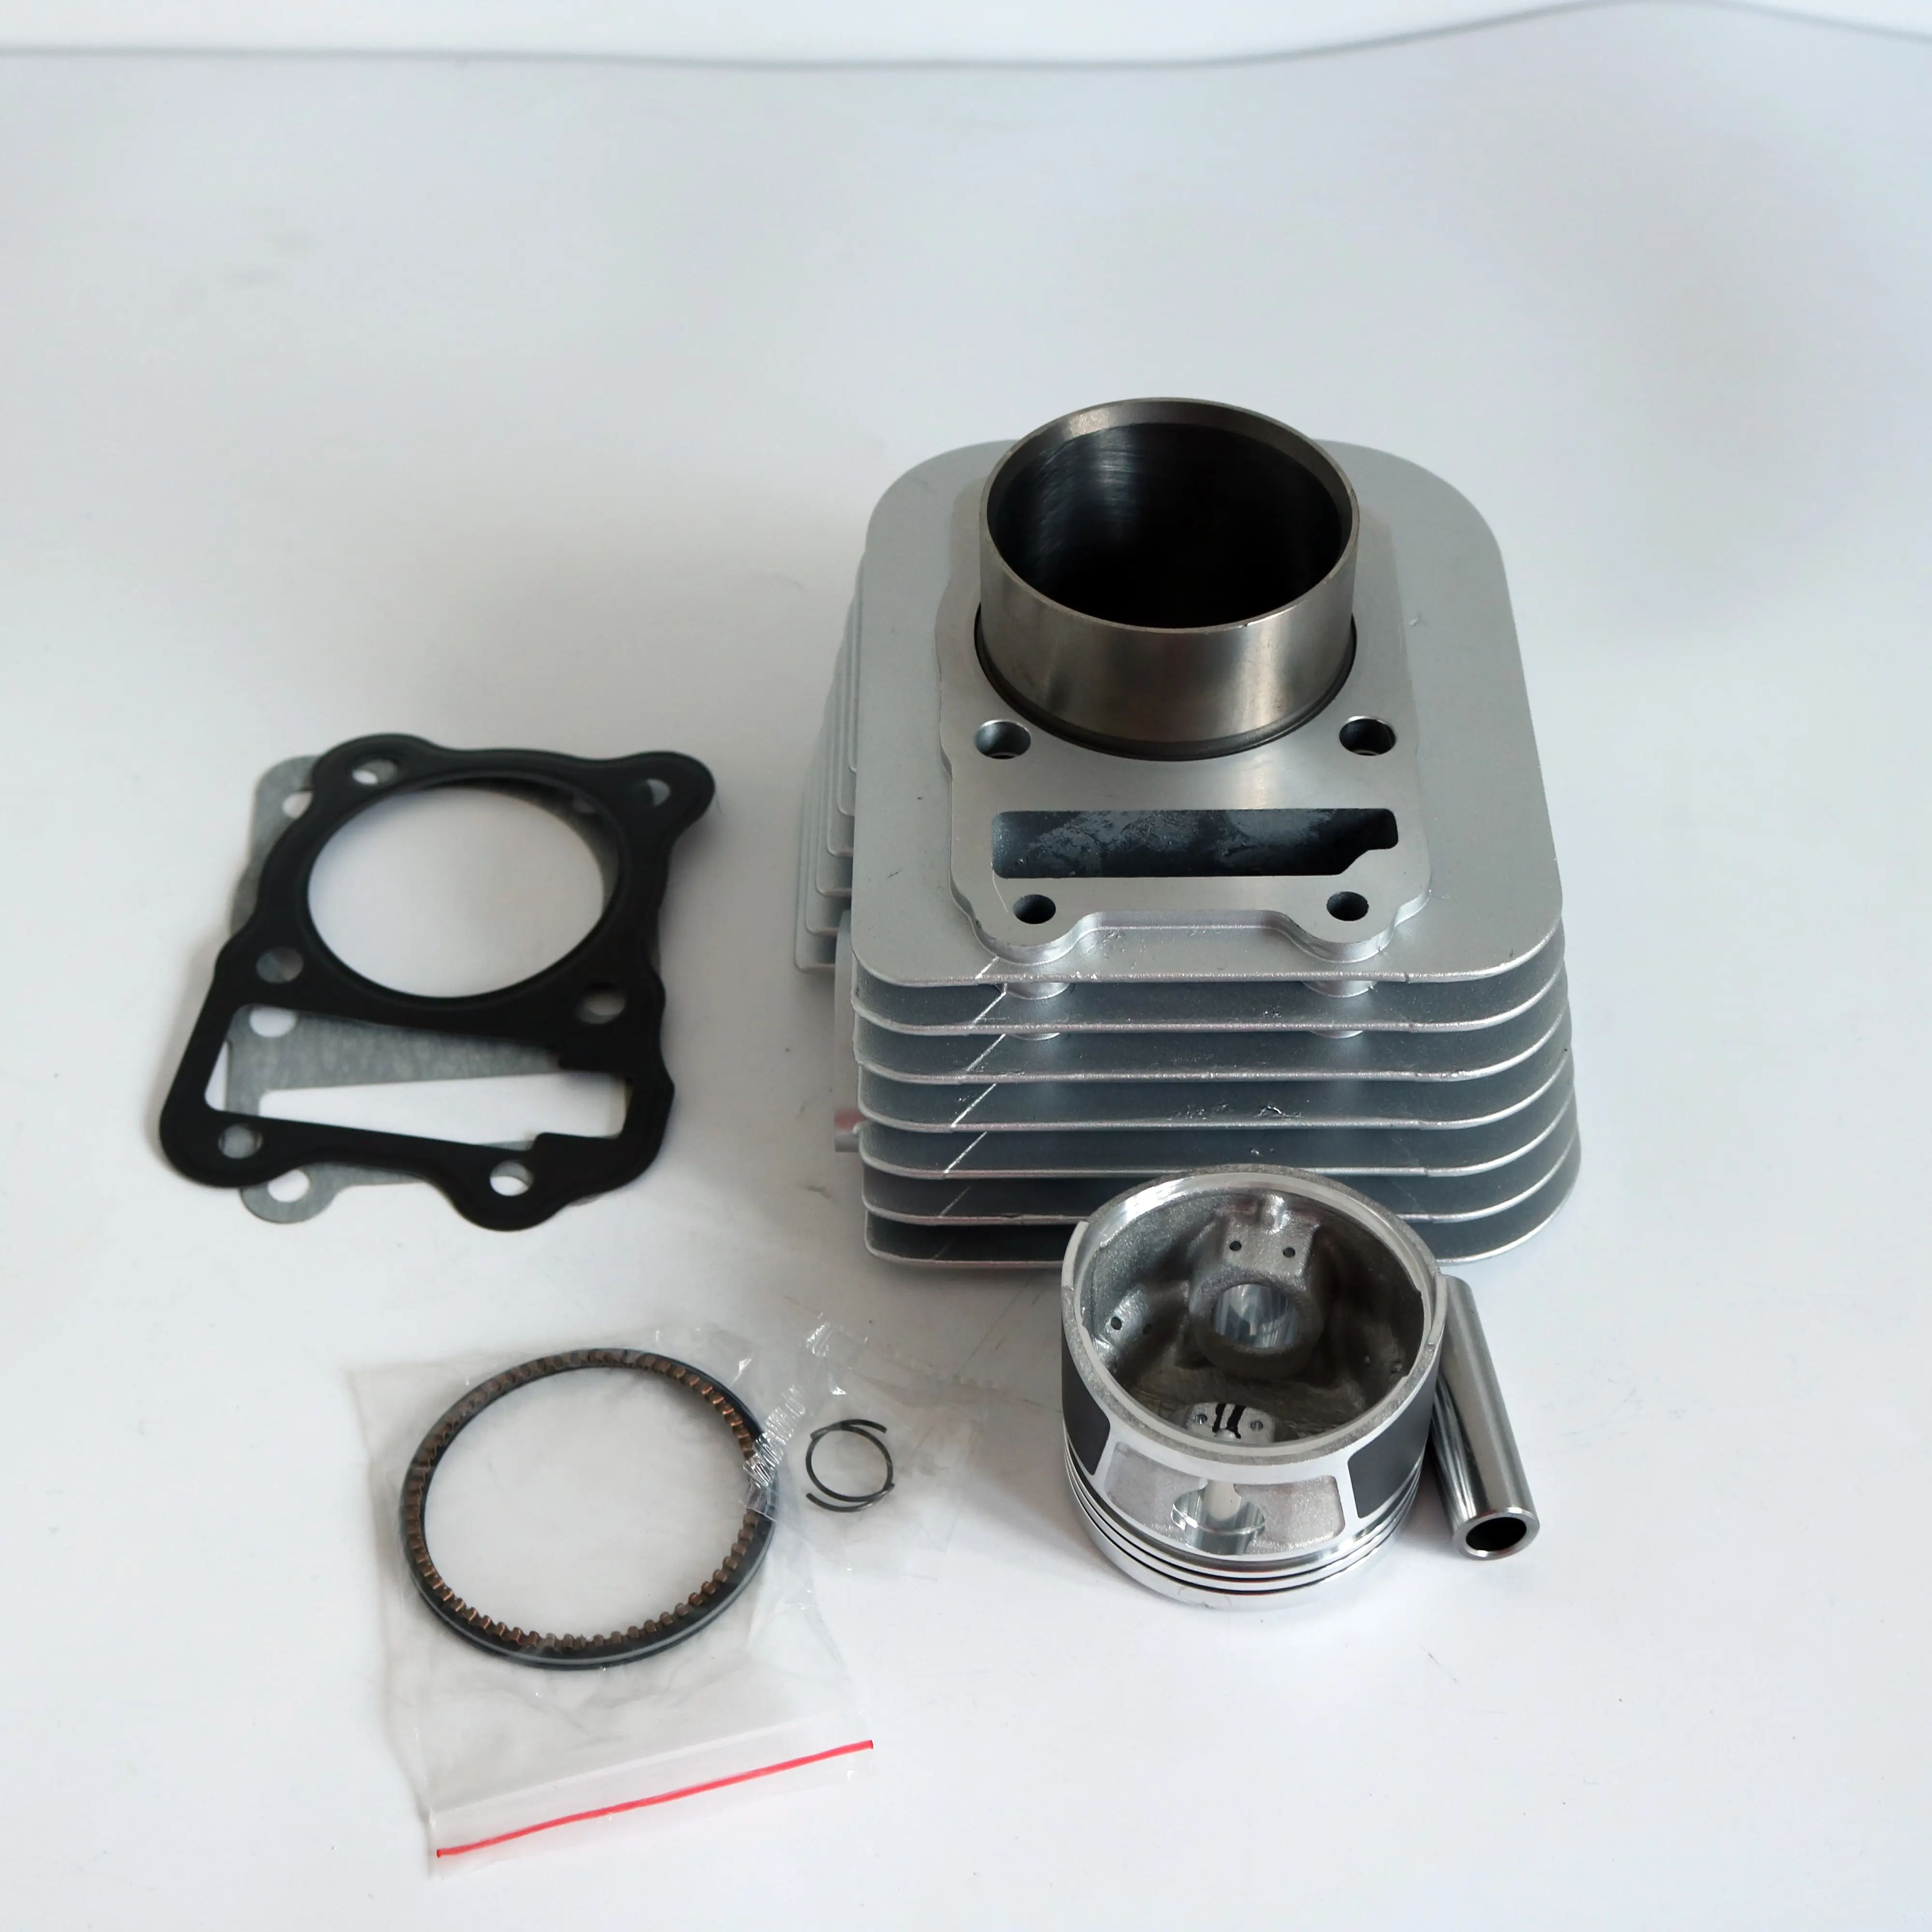 Fabbrica originale esclusivamente per kit cilindro motore ATV/UTV 200CC kit guarnizioni cilindro kit cilindro moto